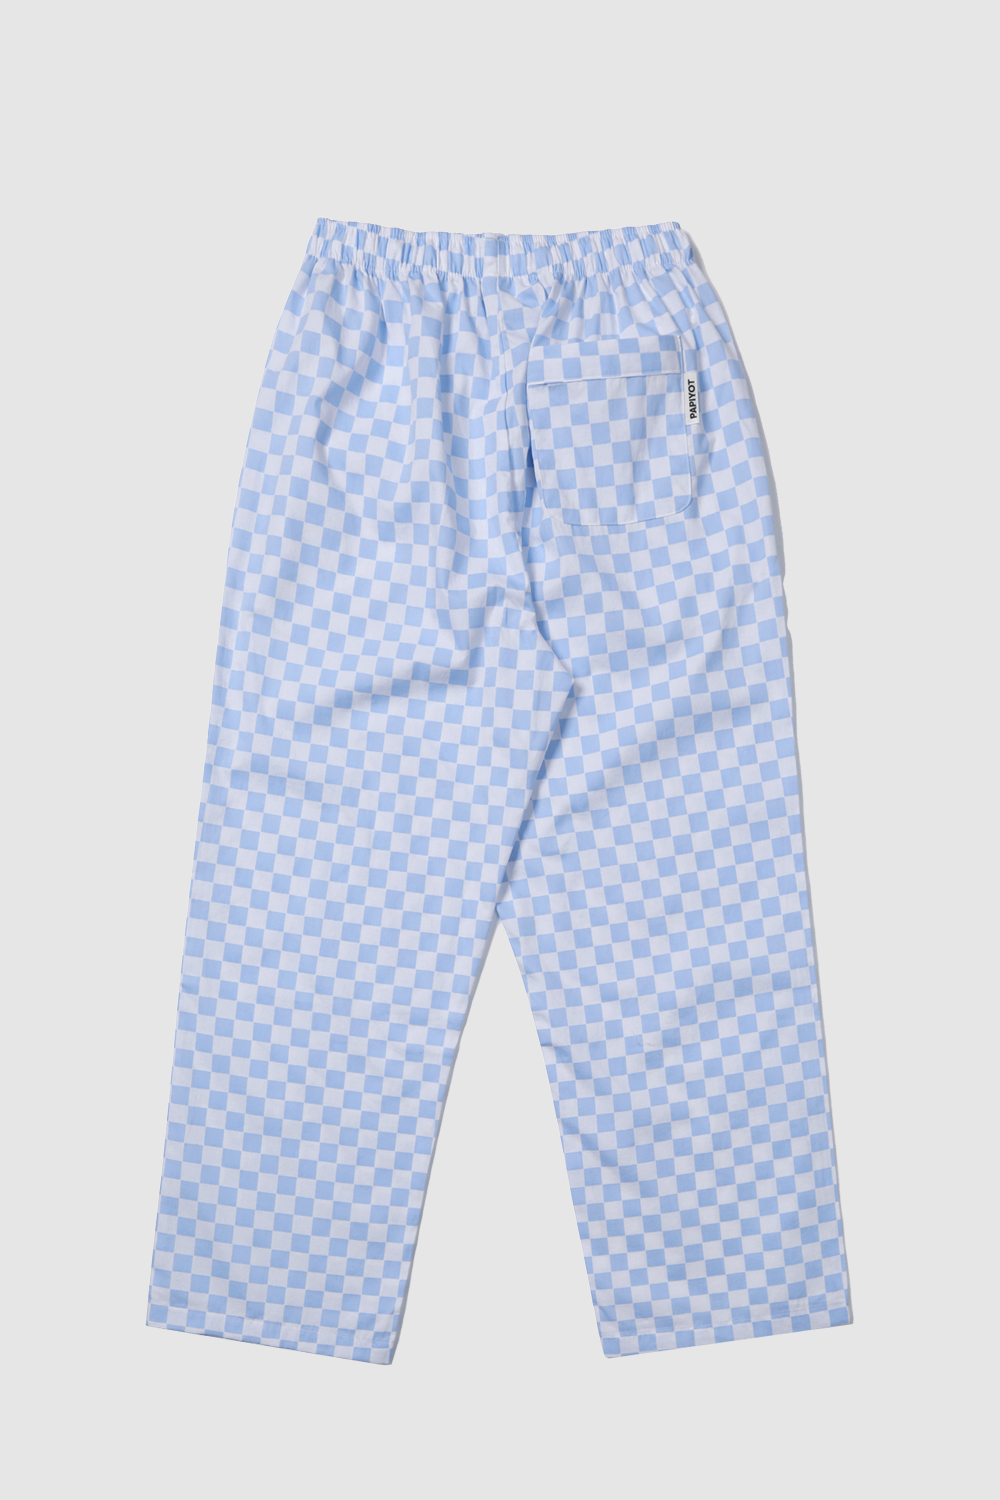 long vacation pajamas pants blue